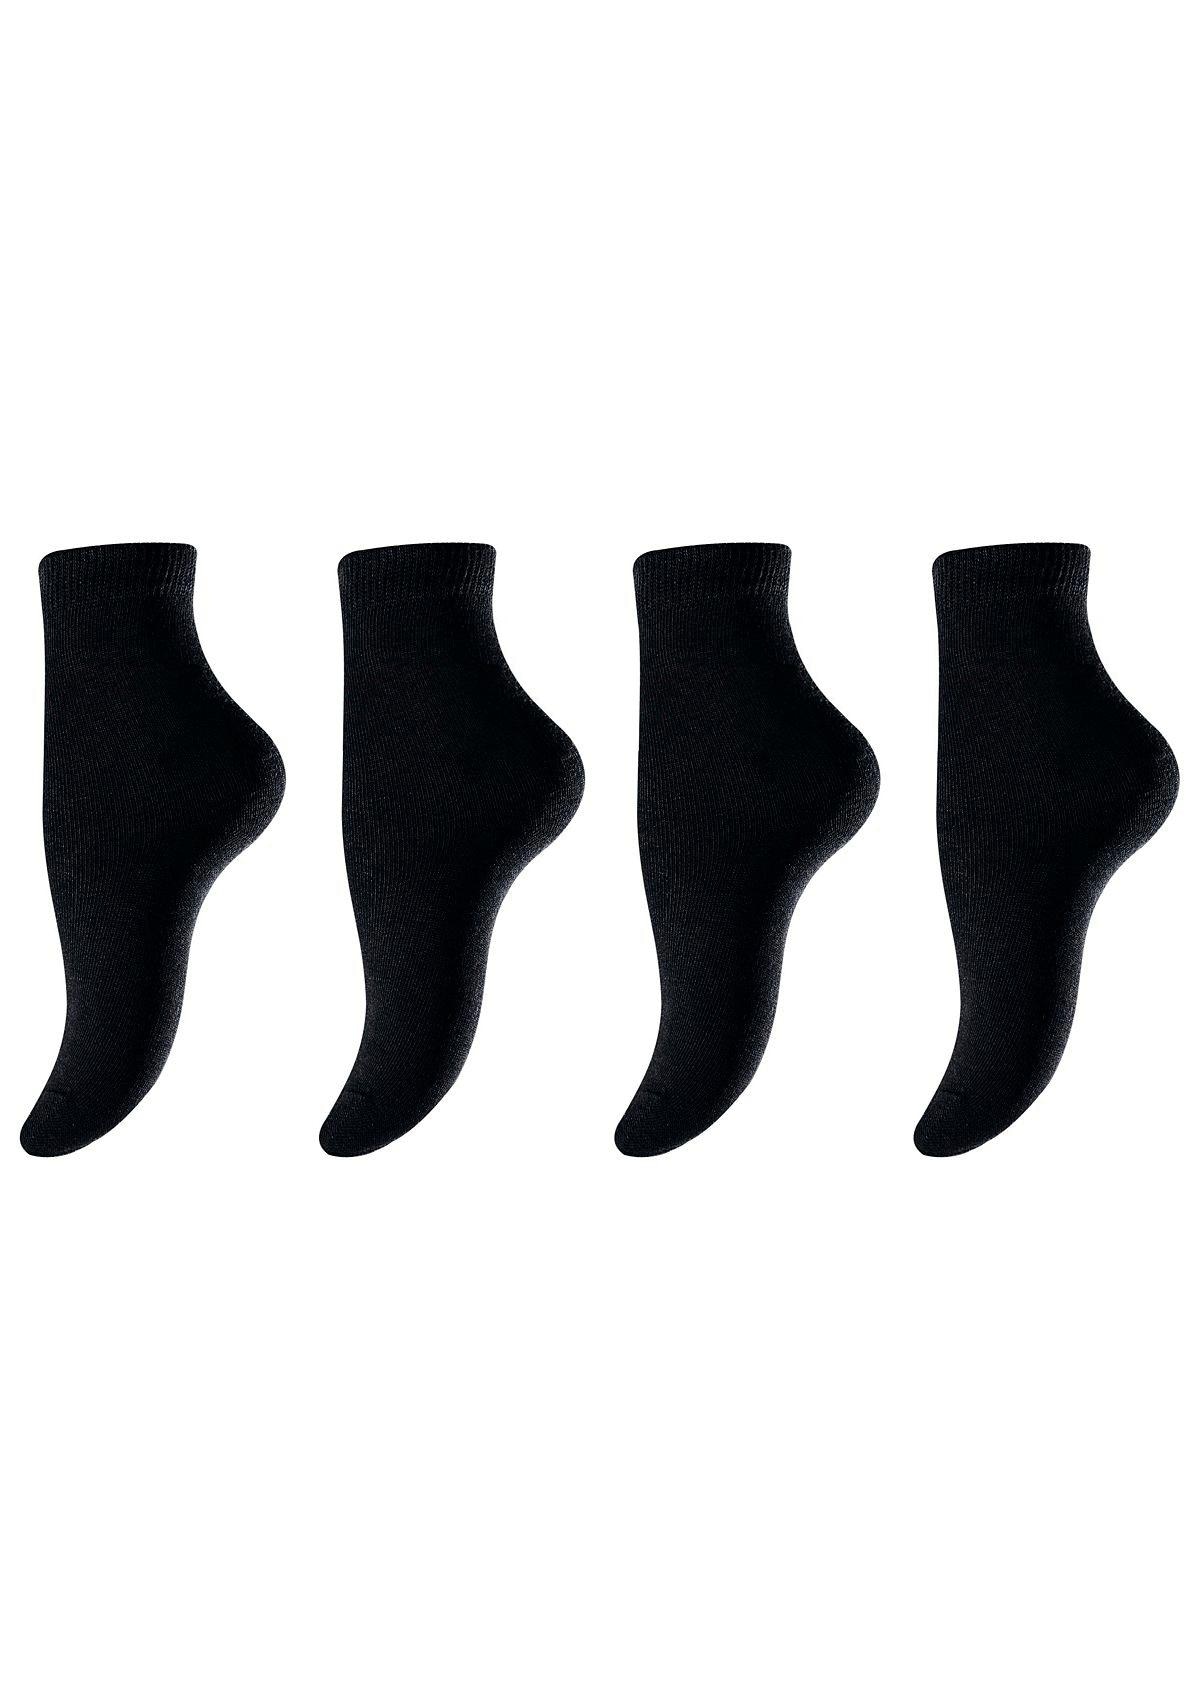 H.I.S Socken, (Set, 4 Paar), in unterschiedlichen Farbzusammenstellungen